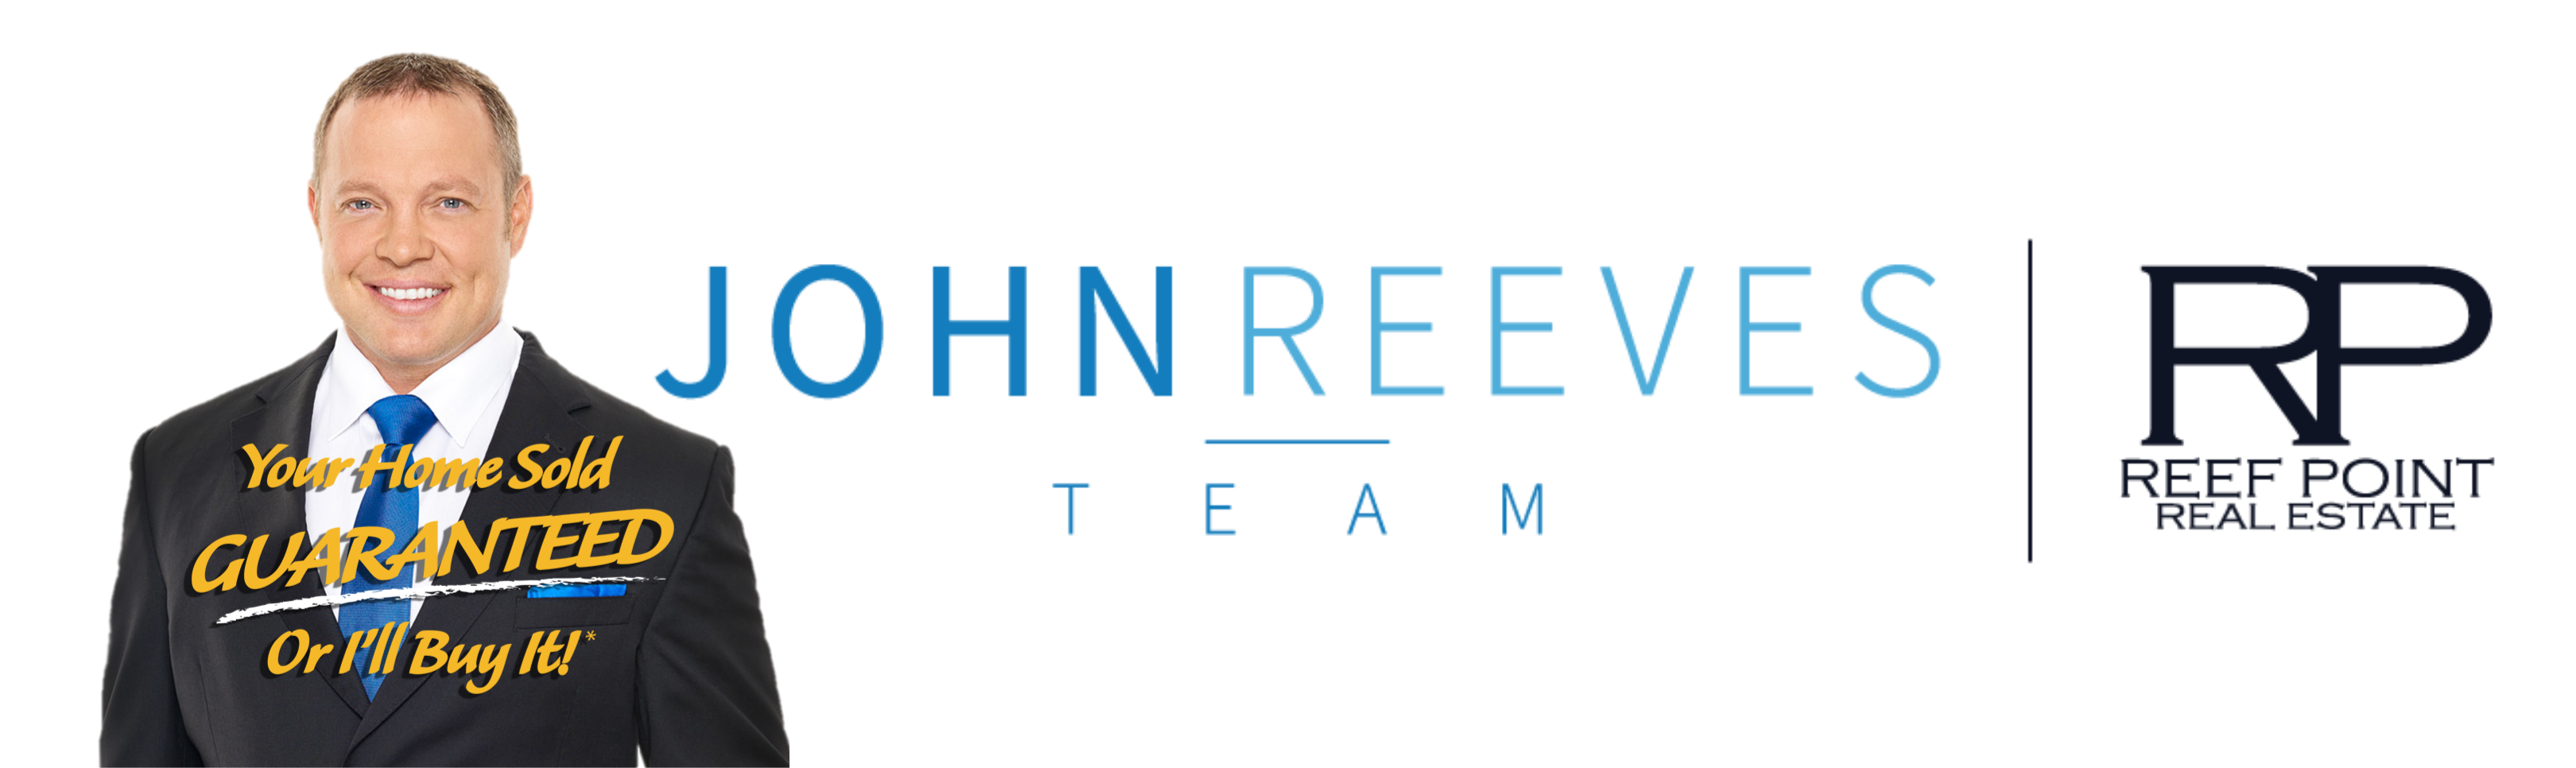 John Reeves Team | Reef Point Realty, Inc